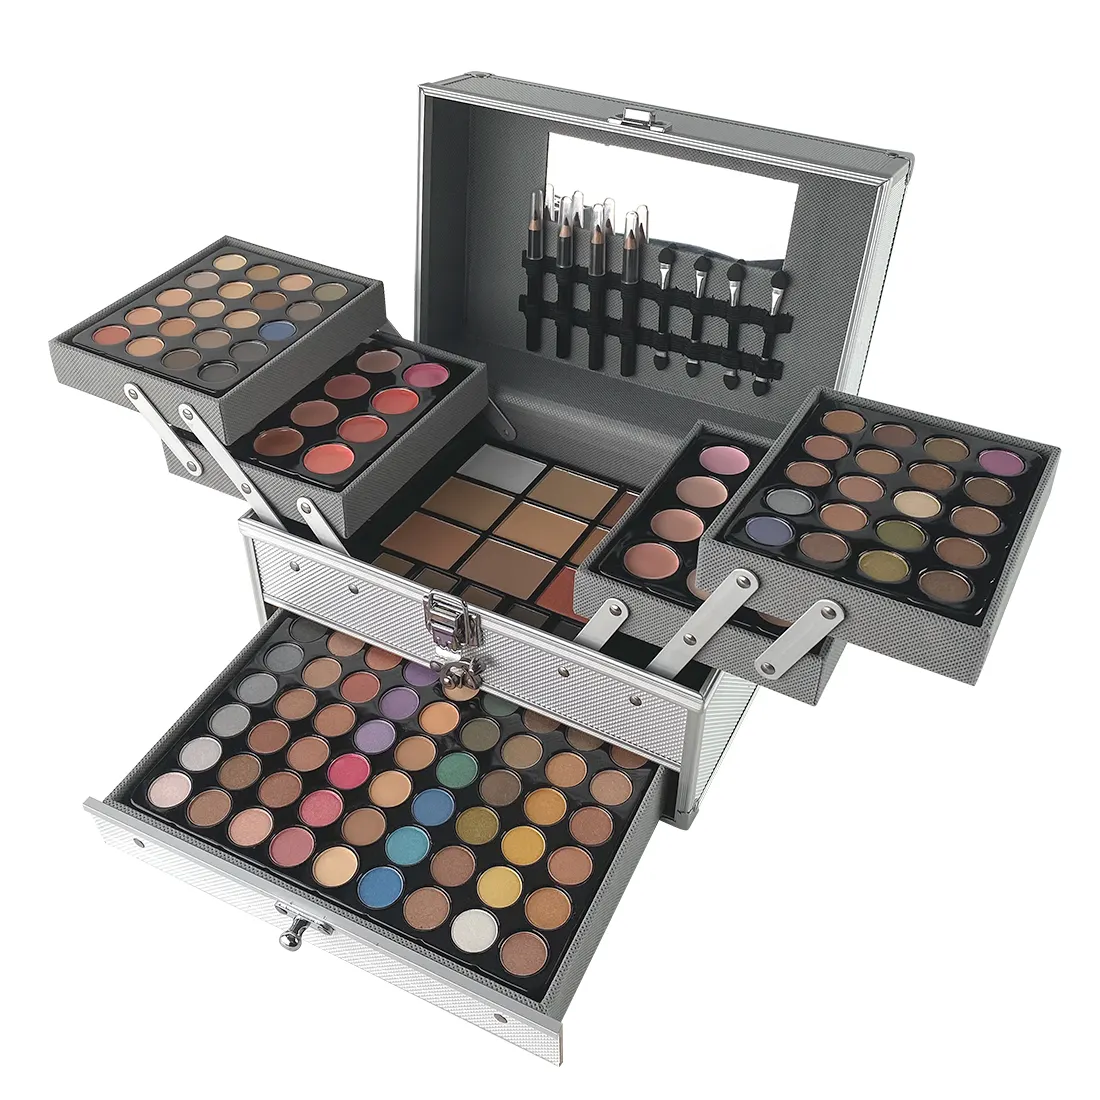 Kit de maquillage professionnel pour femmes, produits cosmétiques, tout-en-un, 132 couleurs, coffret cadeau, multifonctions